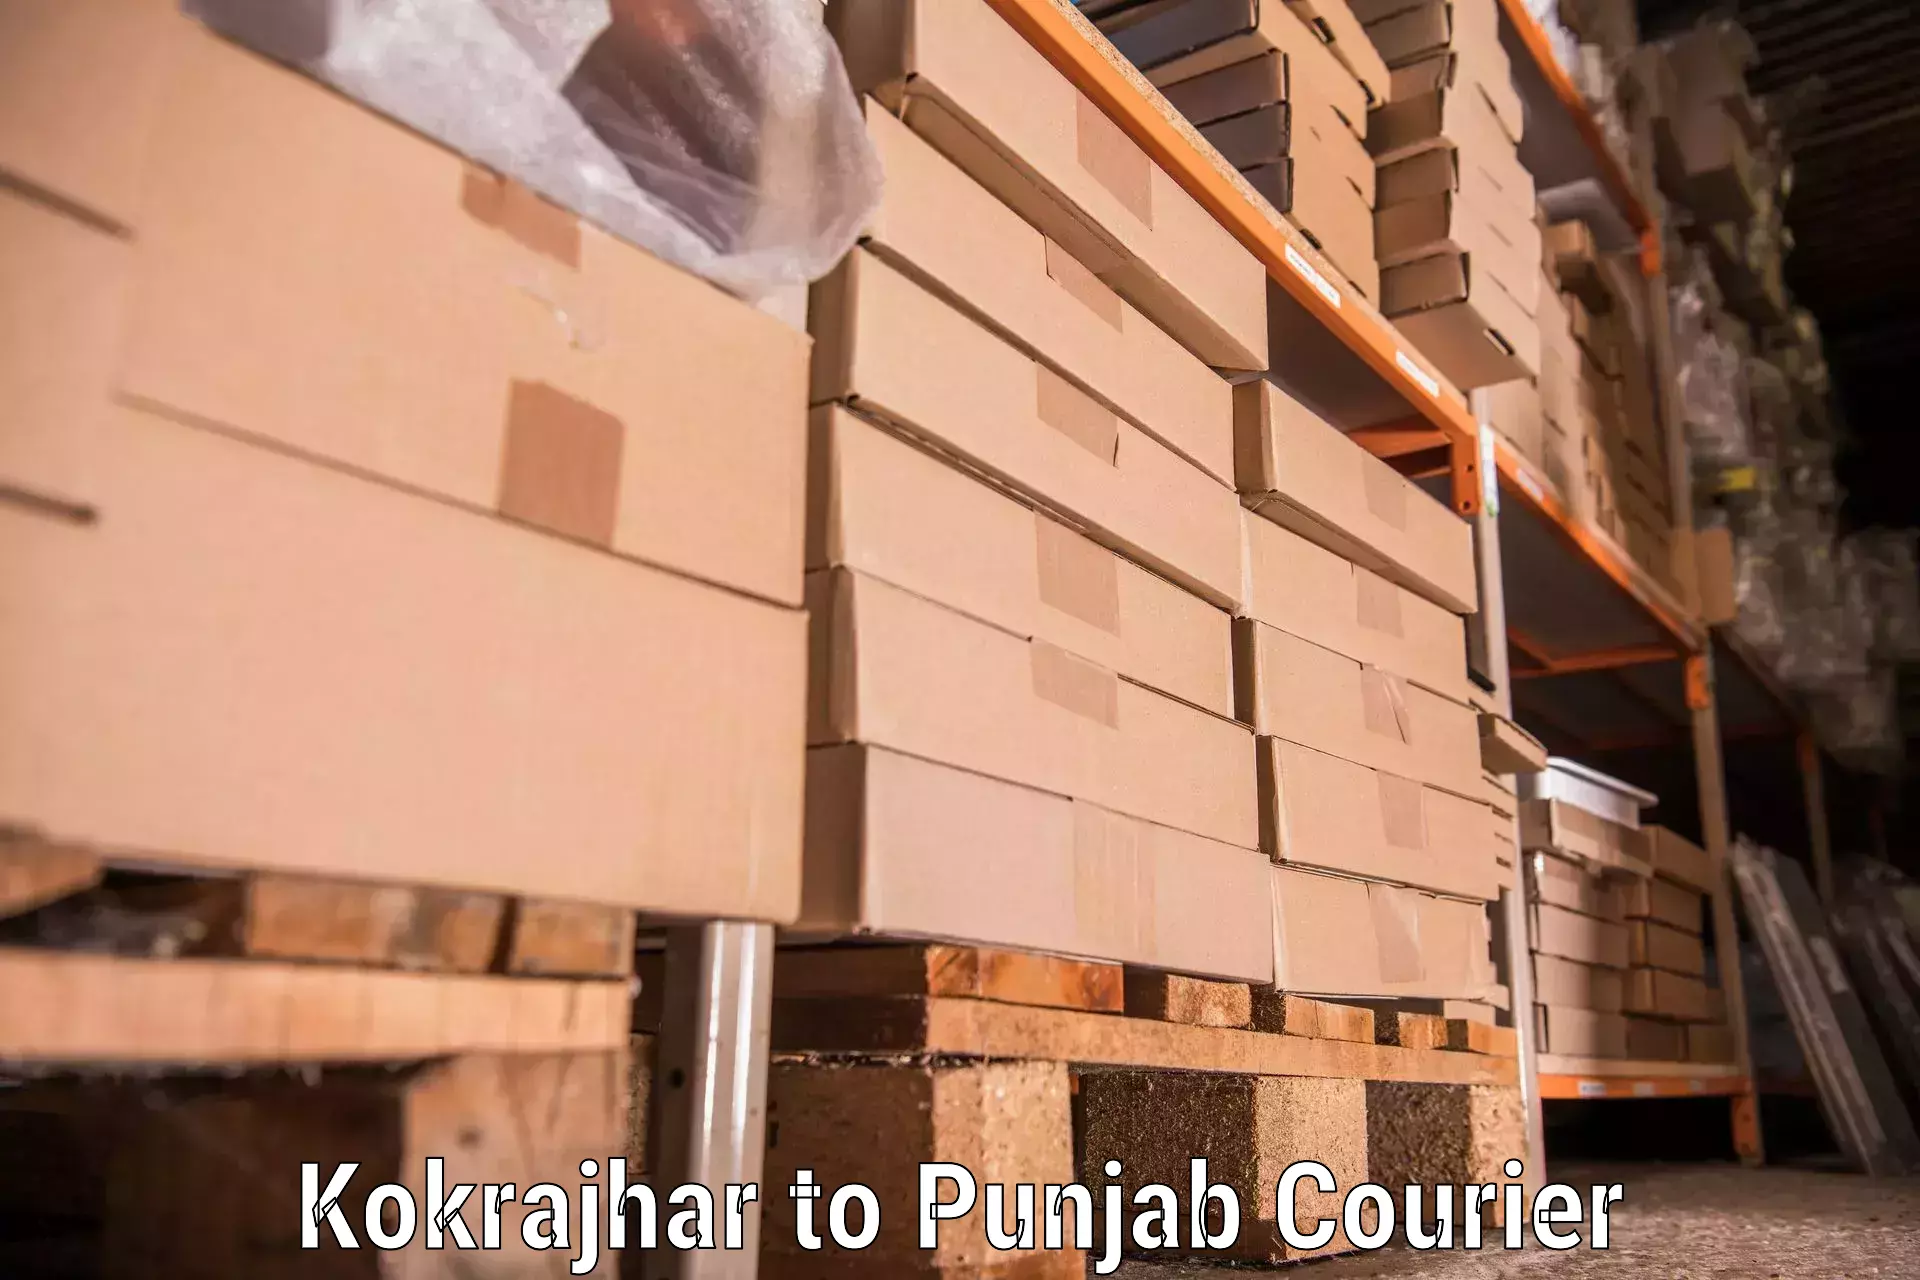 Furniture transport company Kokrajhar to Sunam